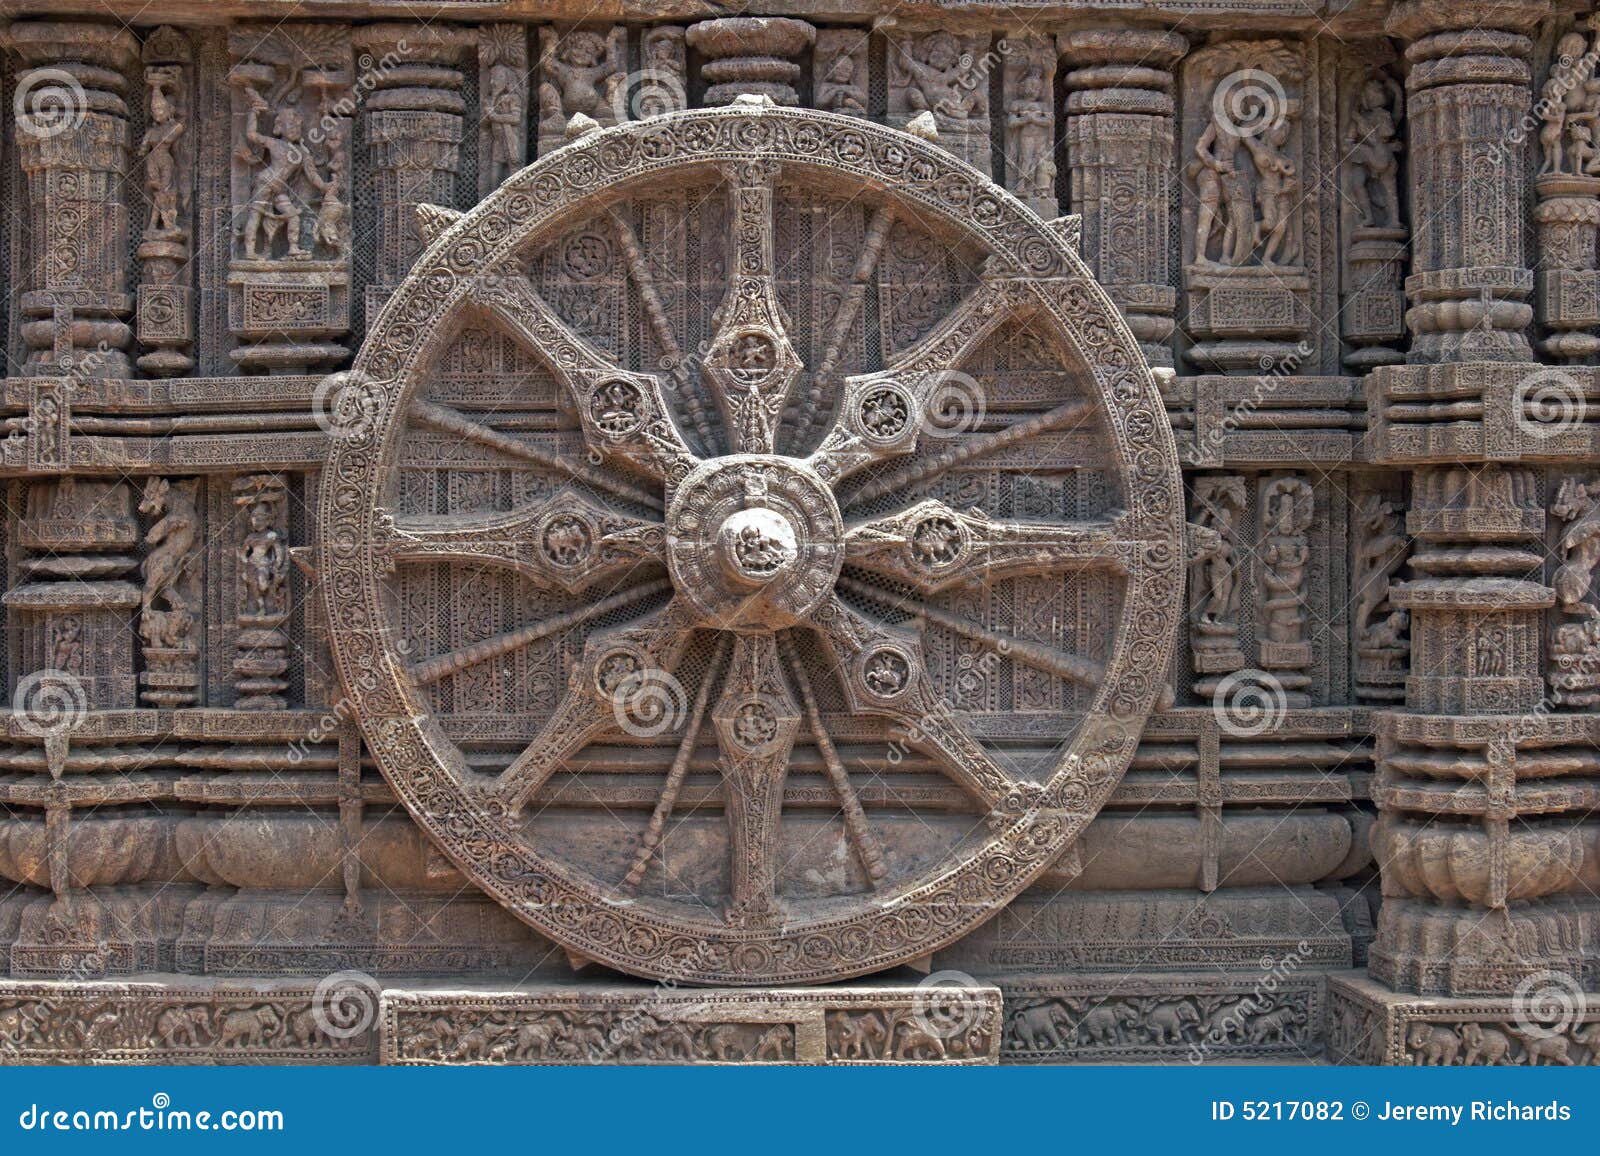 1133 Konark Temple Wheel Images Stock Photos  Vectors  Shutterstock